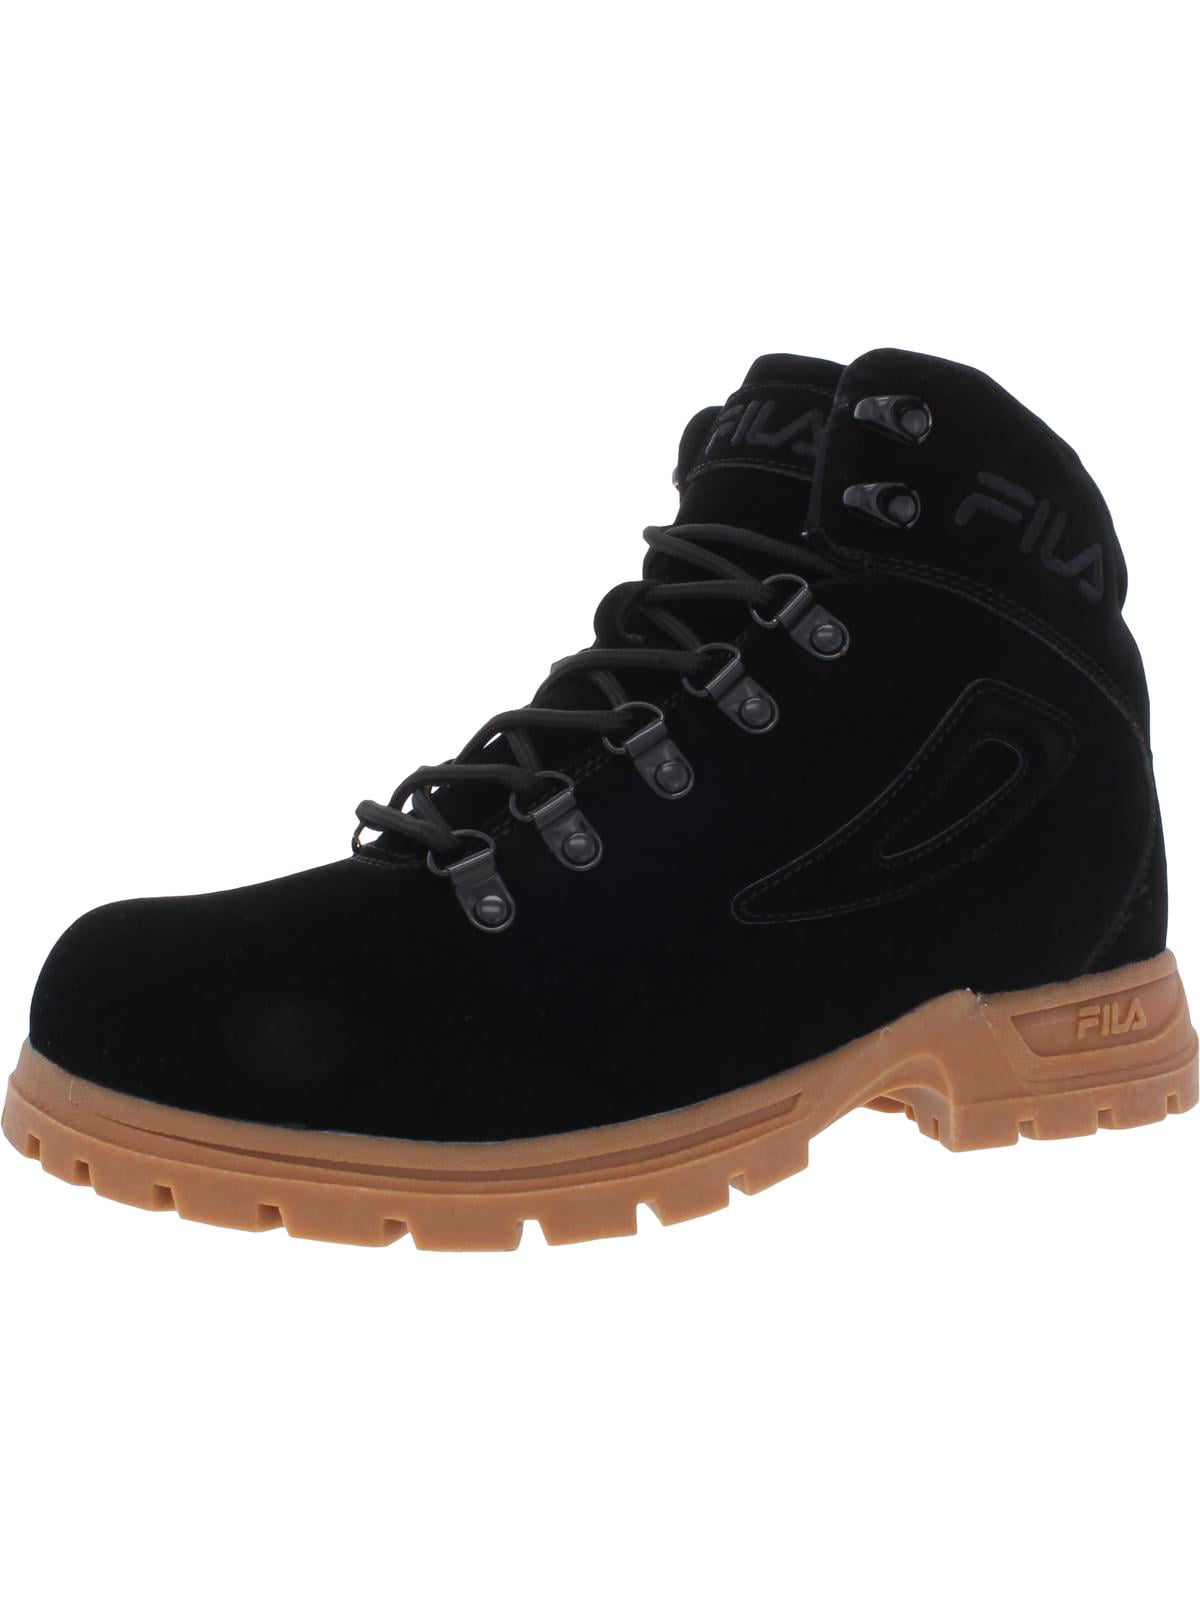 Fila Diviner FS Faux Suede Fitness Boots Black 12 Medium (D) - Walmart.com